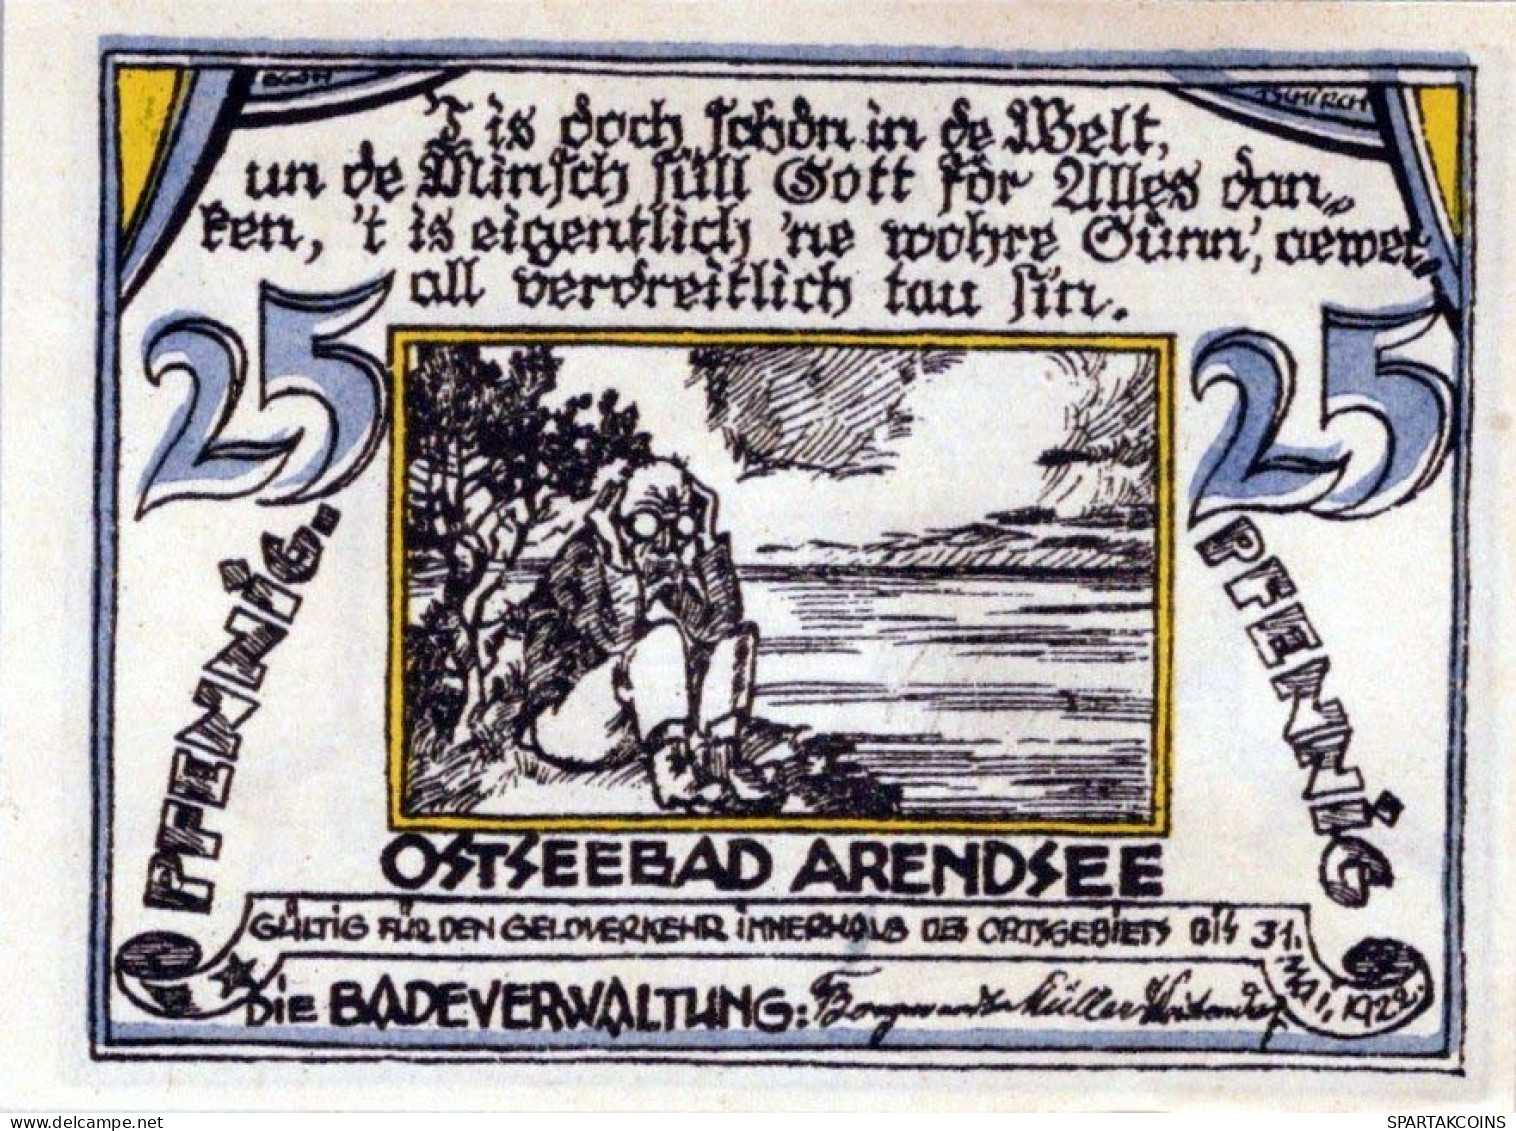 25 PFENNIG 1922 ARENDSEE AN DER OSTSEE Mecklenburg-Schwerin DEUTSCHLAND #PJ114 - [11] Local Banknote Issues